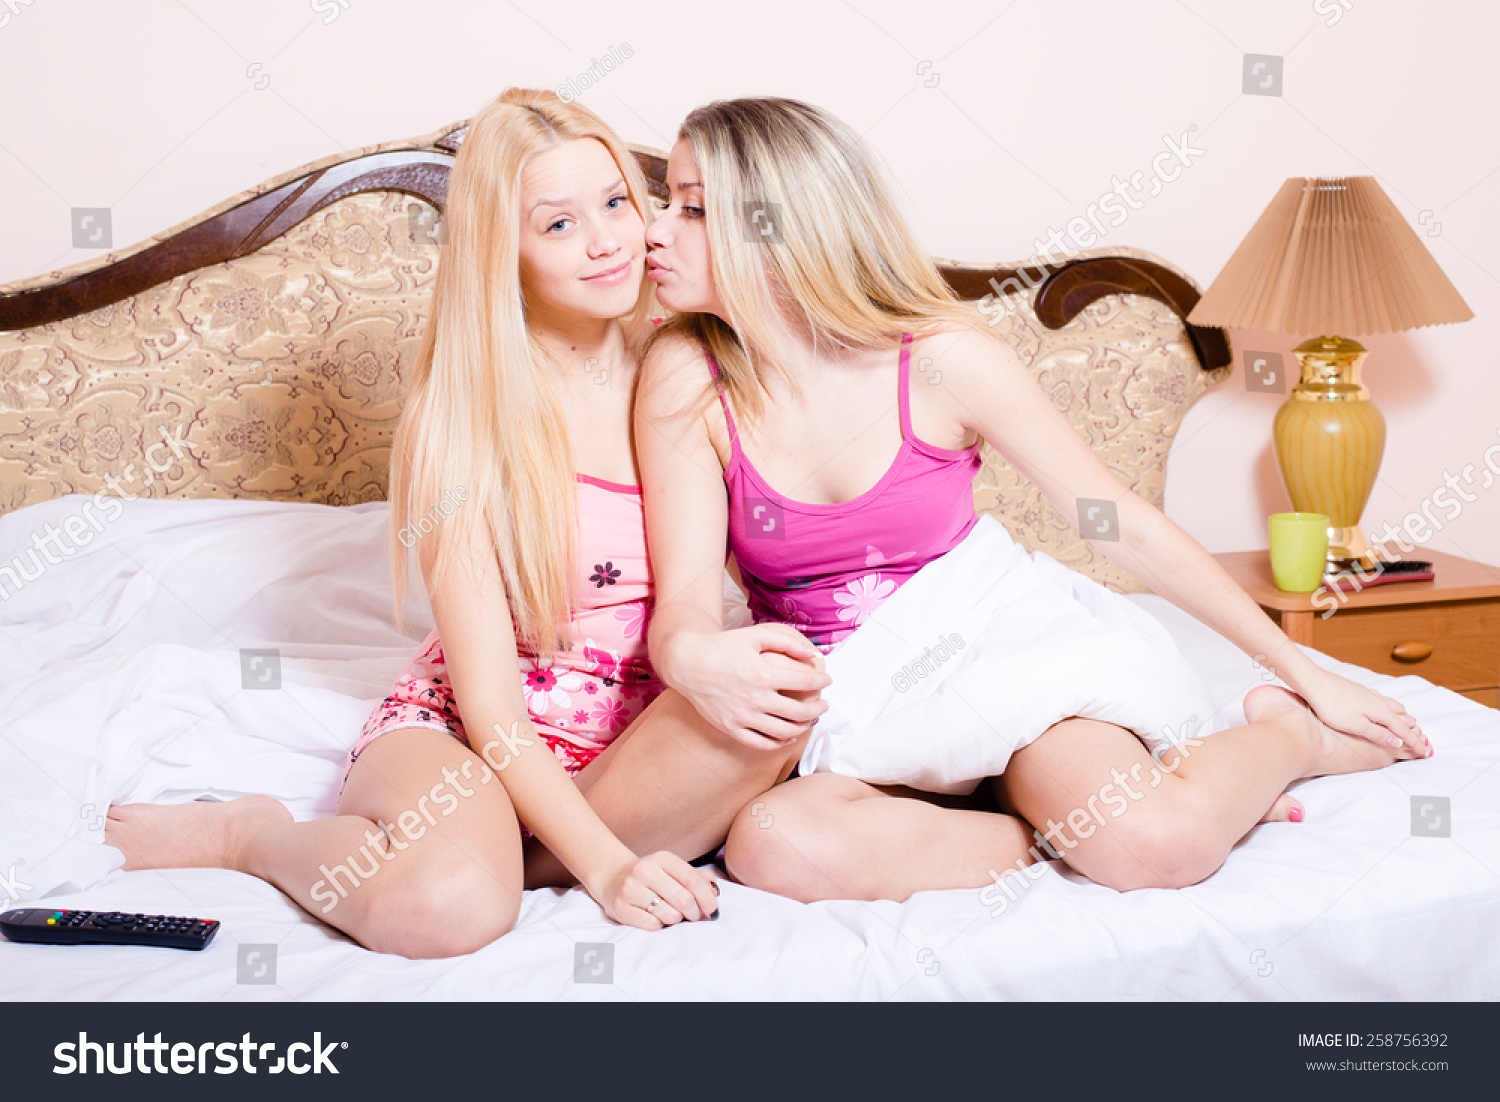 Нежно русскую подругу. Две блондинки в постели. Юные подруги. Две сестрички в постели. Две сестренки на кровати.